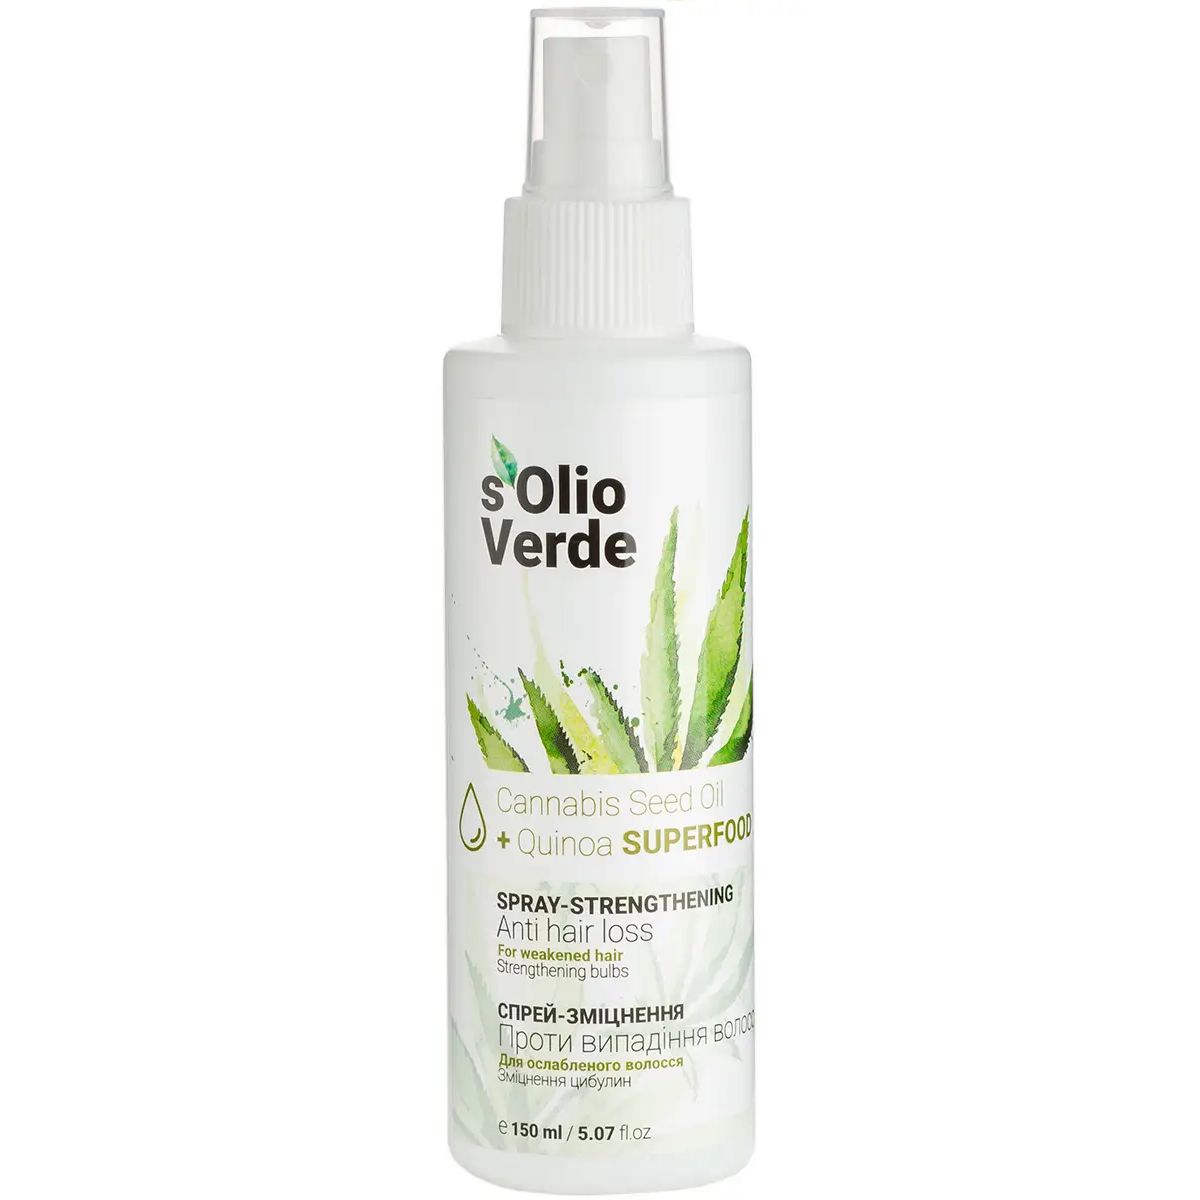 Спрей-укрепление S'olio Verde Cannabis Seed Oil против выпадения волос 150 мл - фото 1